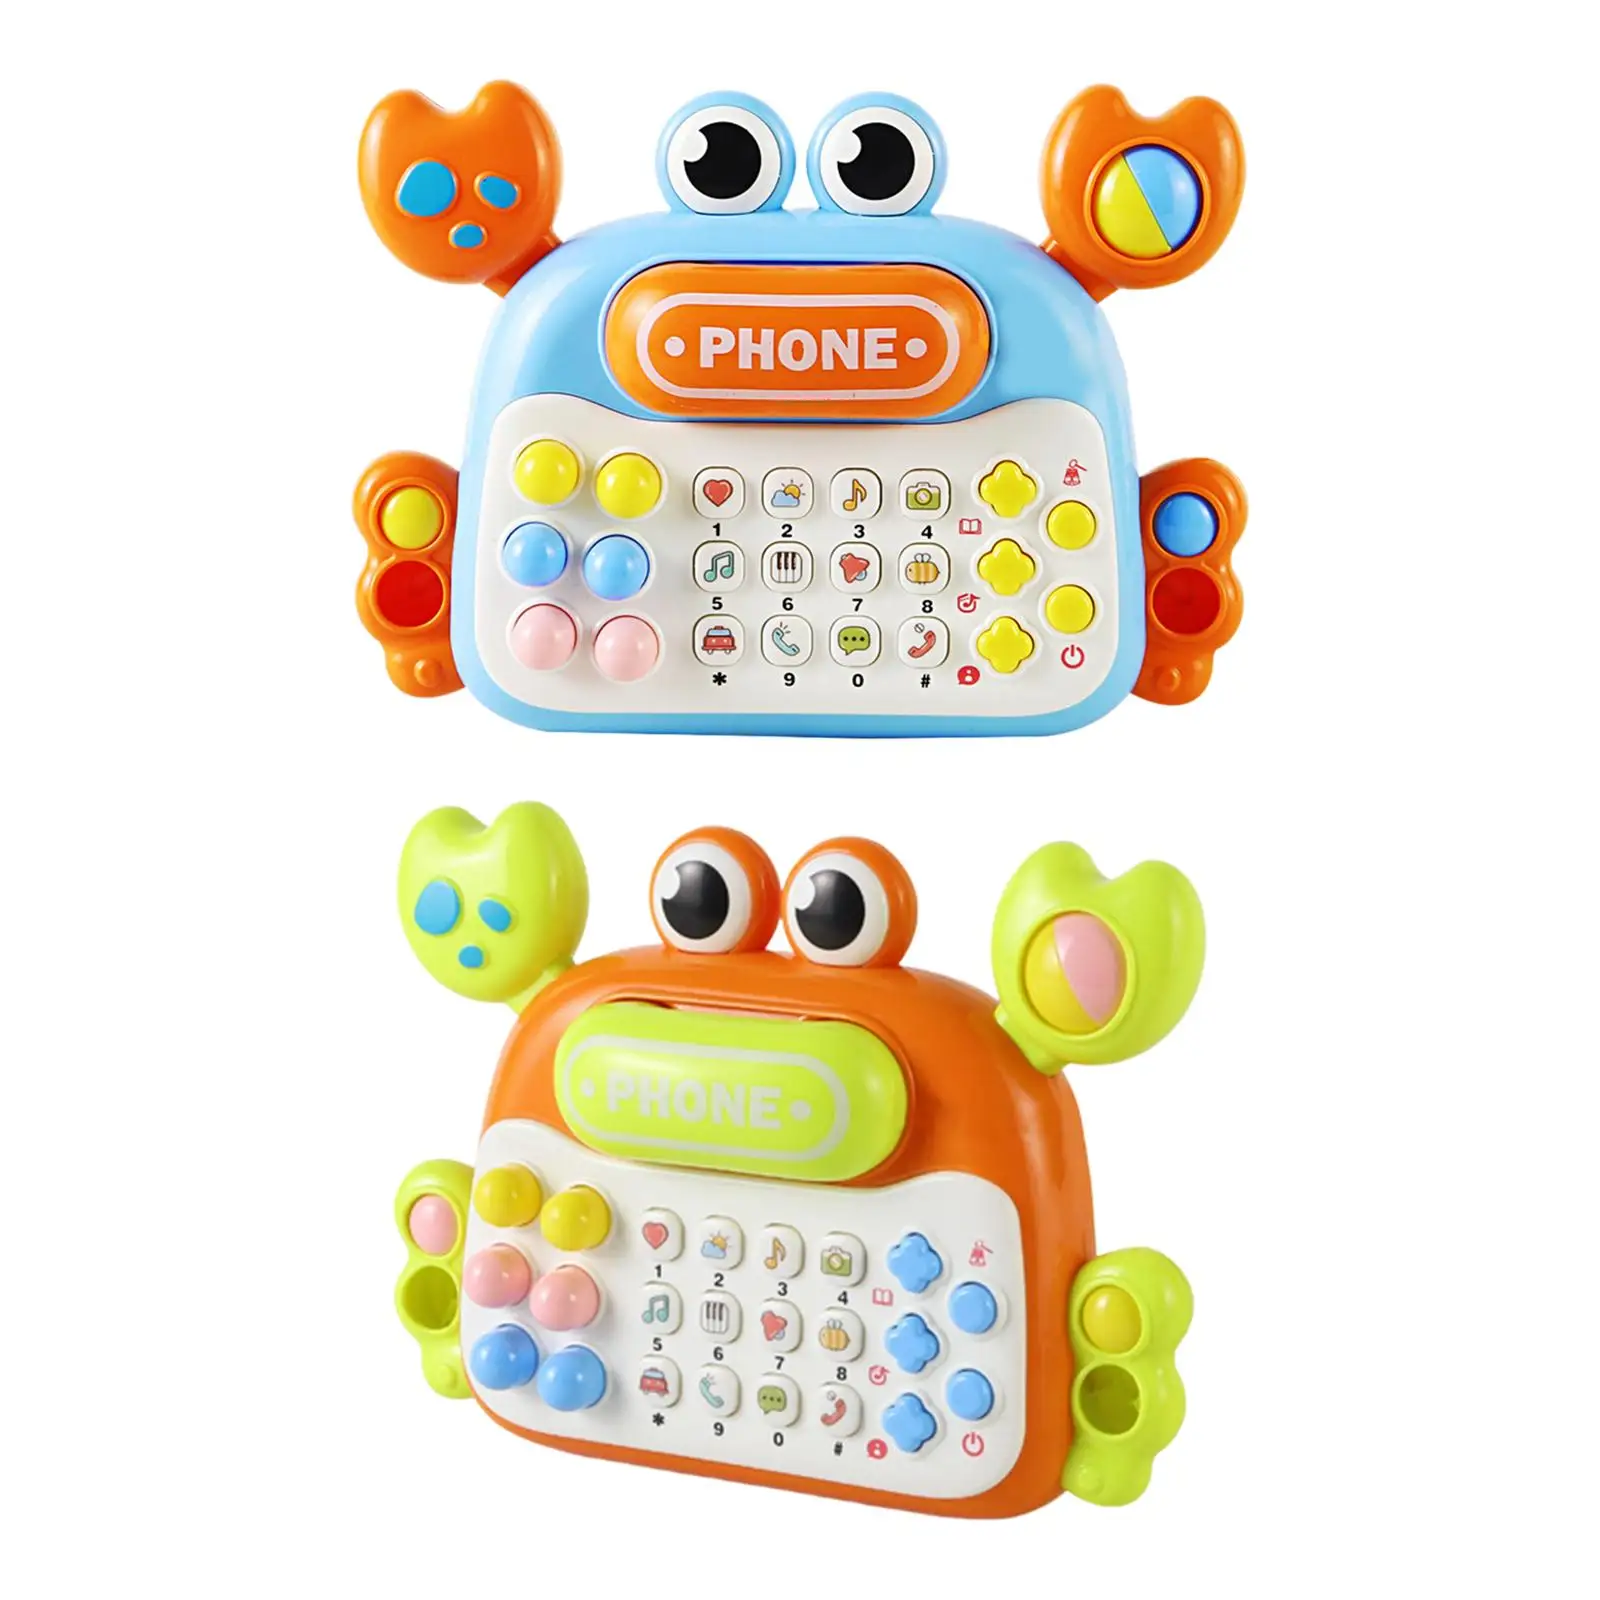 

Обучающая игрушка Монтессори, игрушка для разговора, телефон, детская игрушка, телефон для мальчиков, подарок для раннего развития, креативный подарок для детей 3 лет